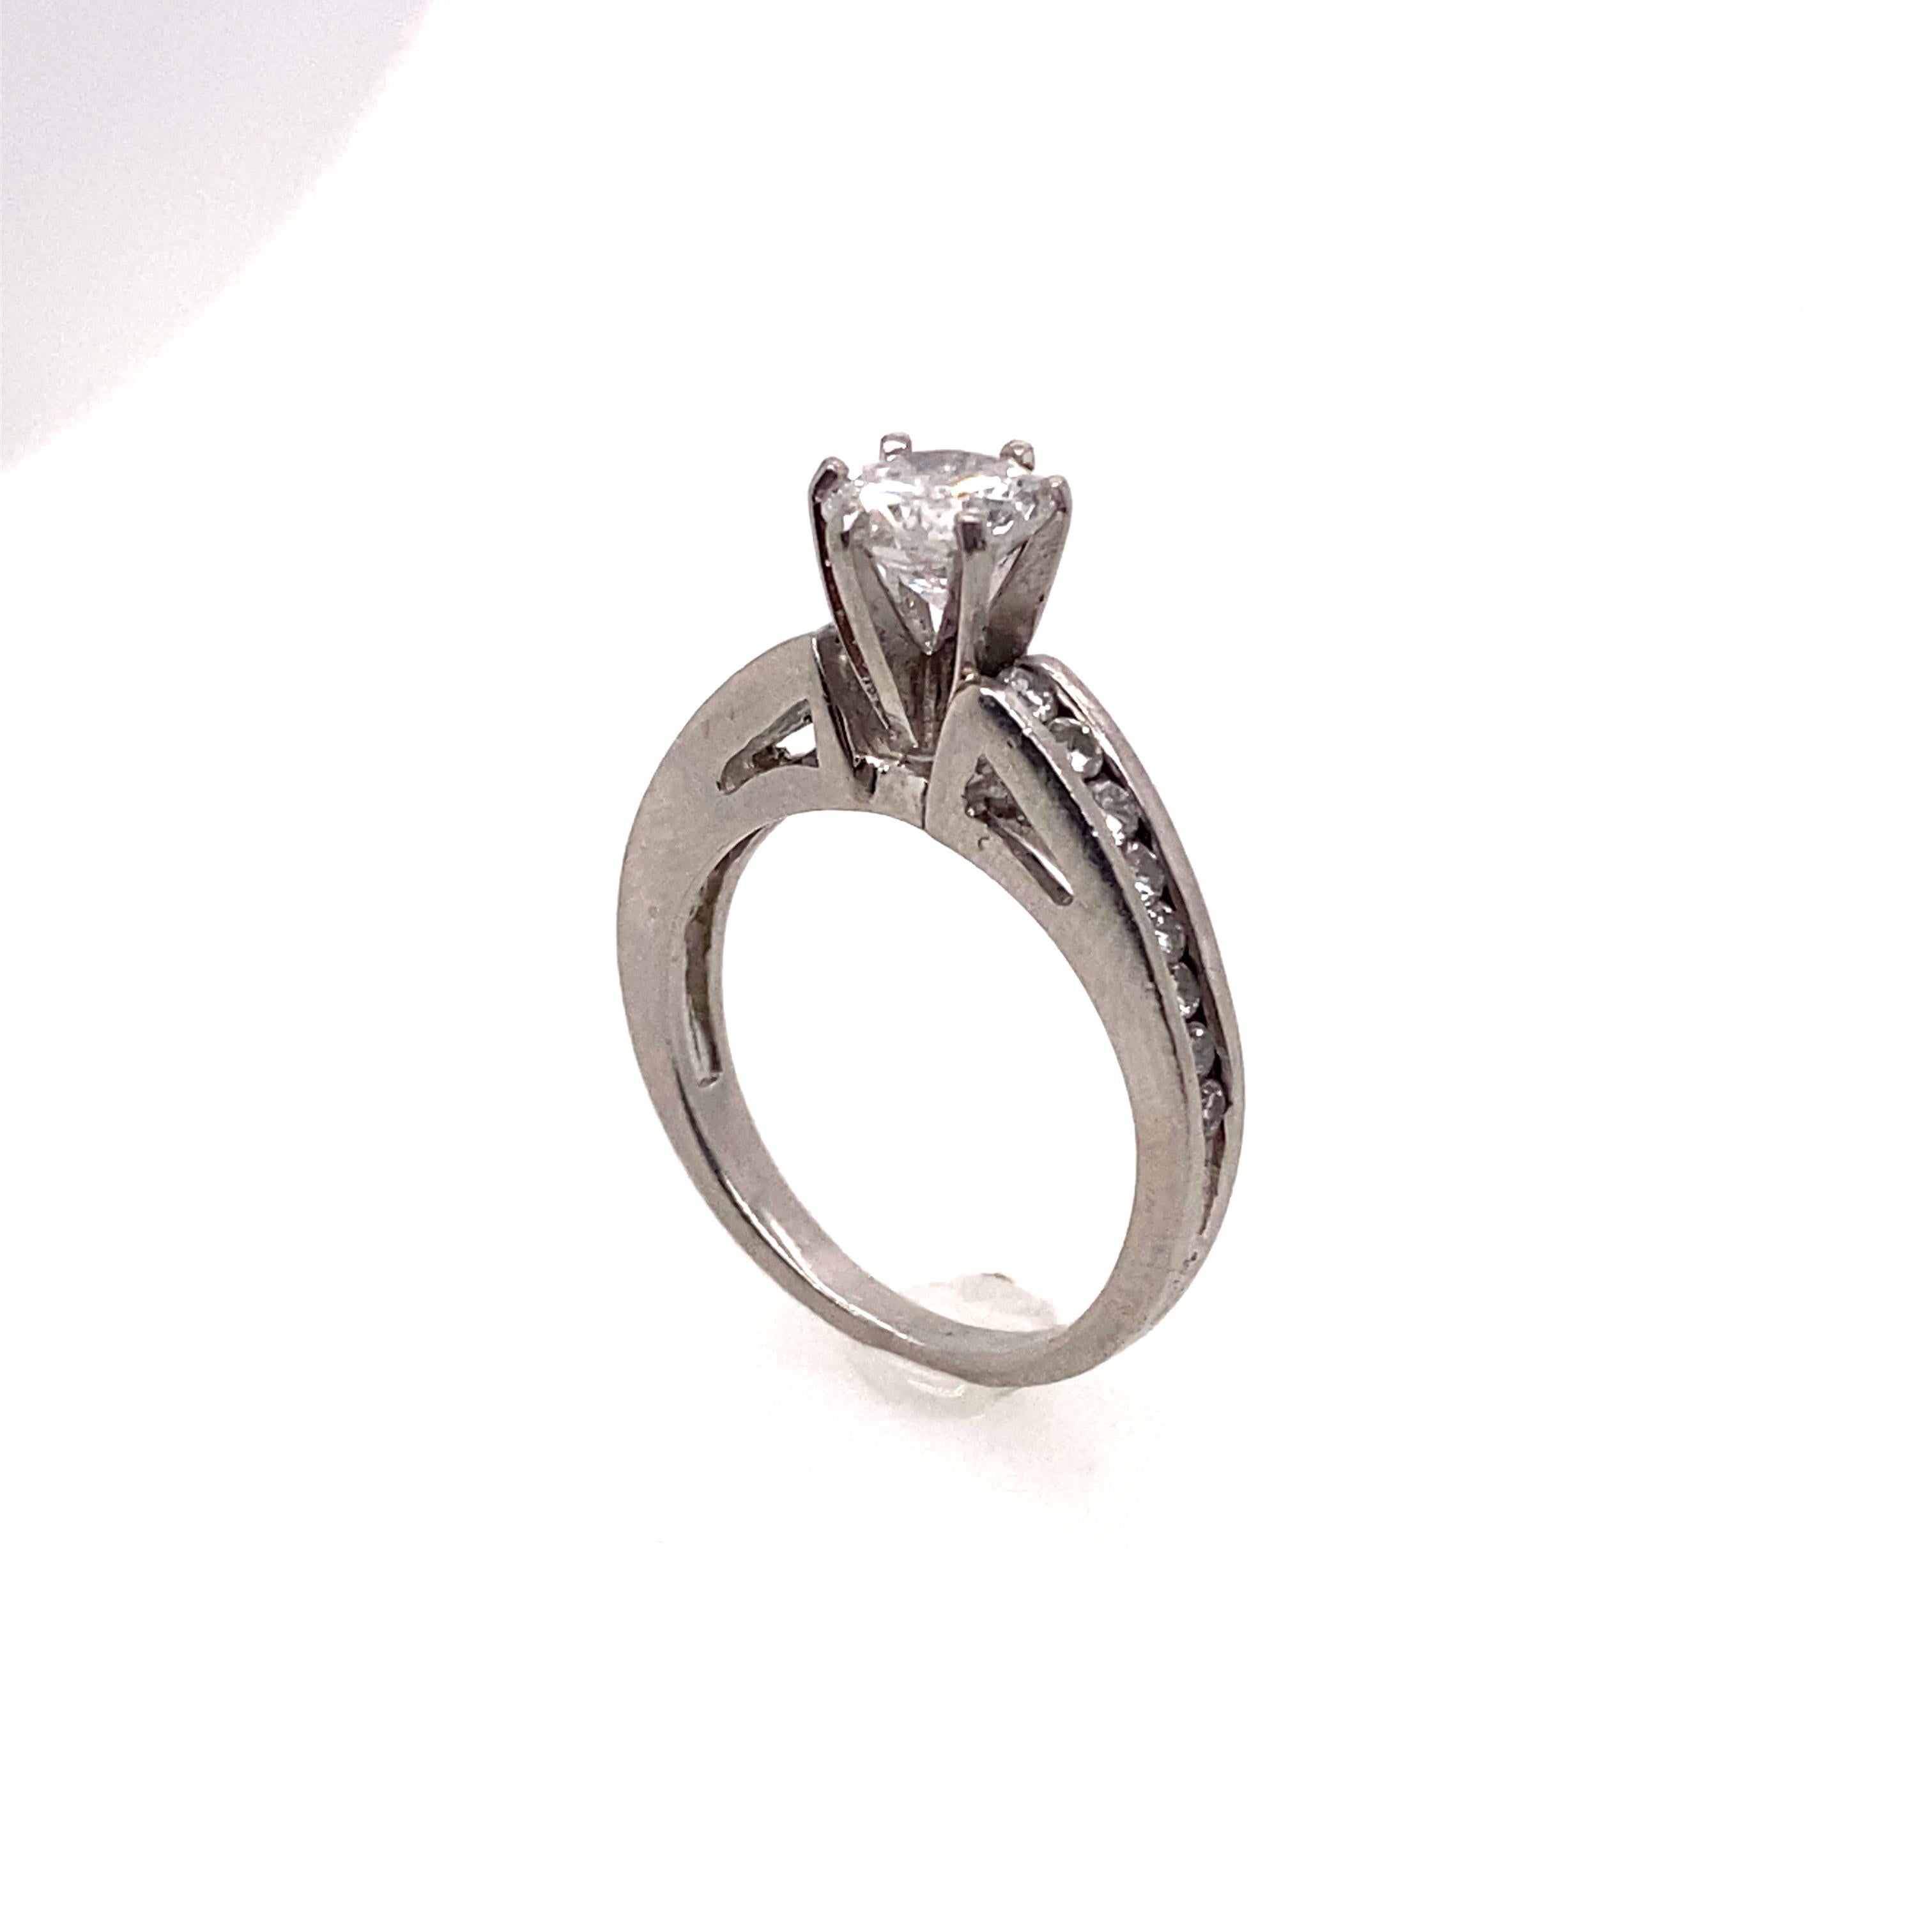 Der Brillant im Rundschliff mit 0,80 Karat ist als Mittelstein in den Platinring gefasst. Die Ringschiene ist ebenfalls mit vierzehn seitlichen Diamanten besetzt. Dieser Ring ist perfekt für die Liebhaber von Solitär-Diamantringen.
 
Gewicht des